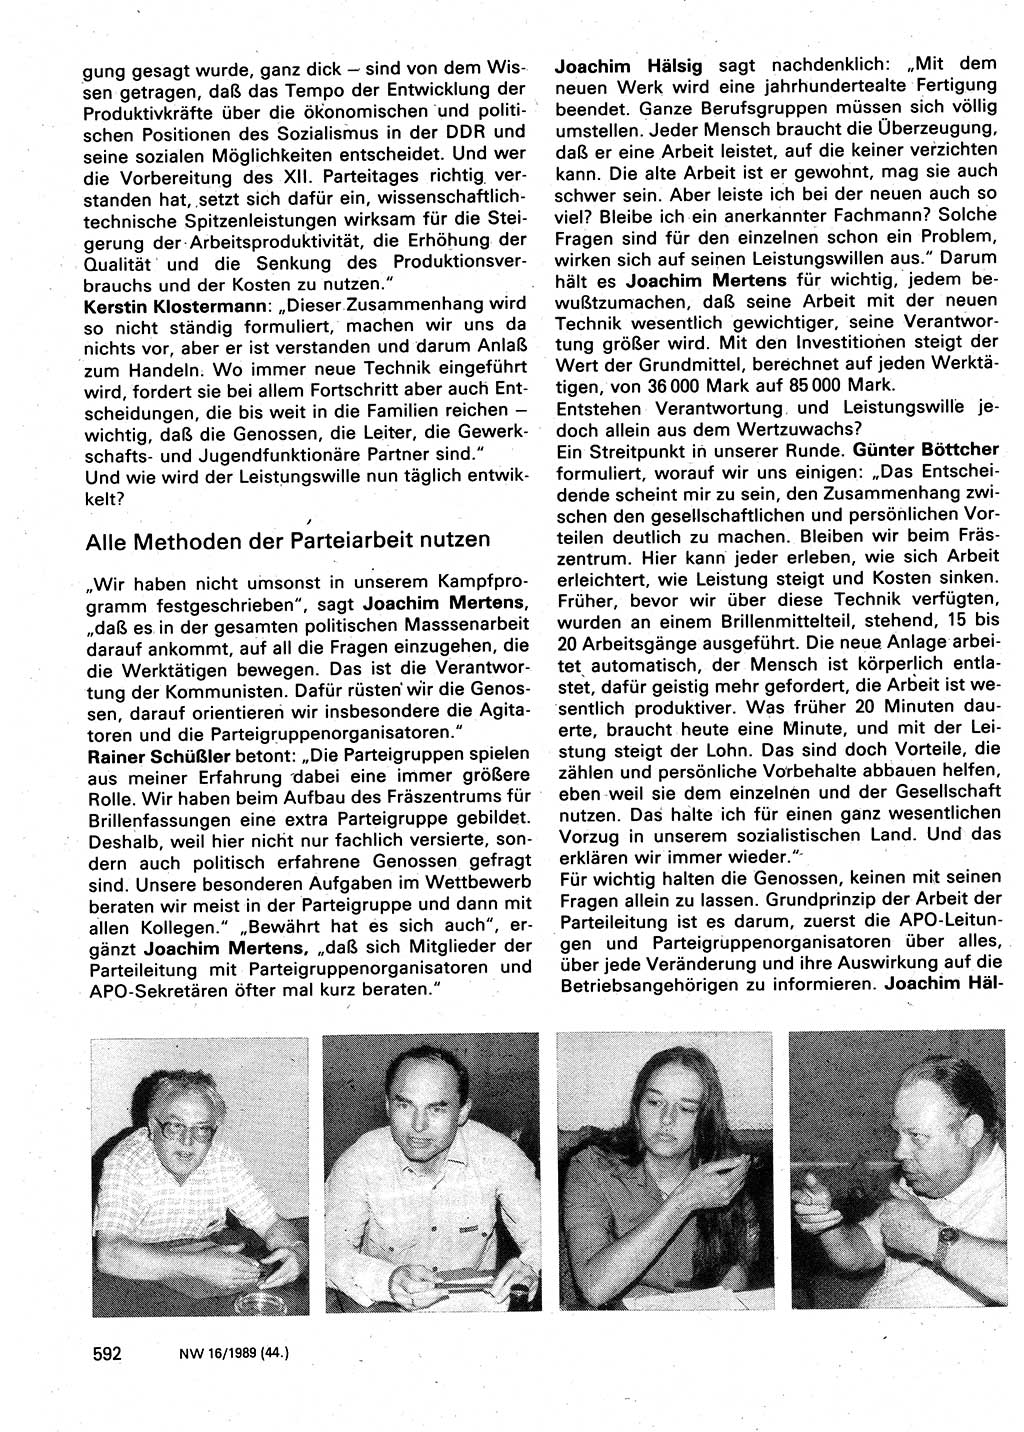 Neuer Weg (NW), Organ des Zentralkomitees (ZK) der SED (Sozialistische Einheitspartei Deutschlands) für Fragen des Parteilebens, 44. Jahrgang [Deutsche Demokratische Republik (DDR)] 1989, Seite 592 (NW ZK SED DDR 1989, S. 592)